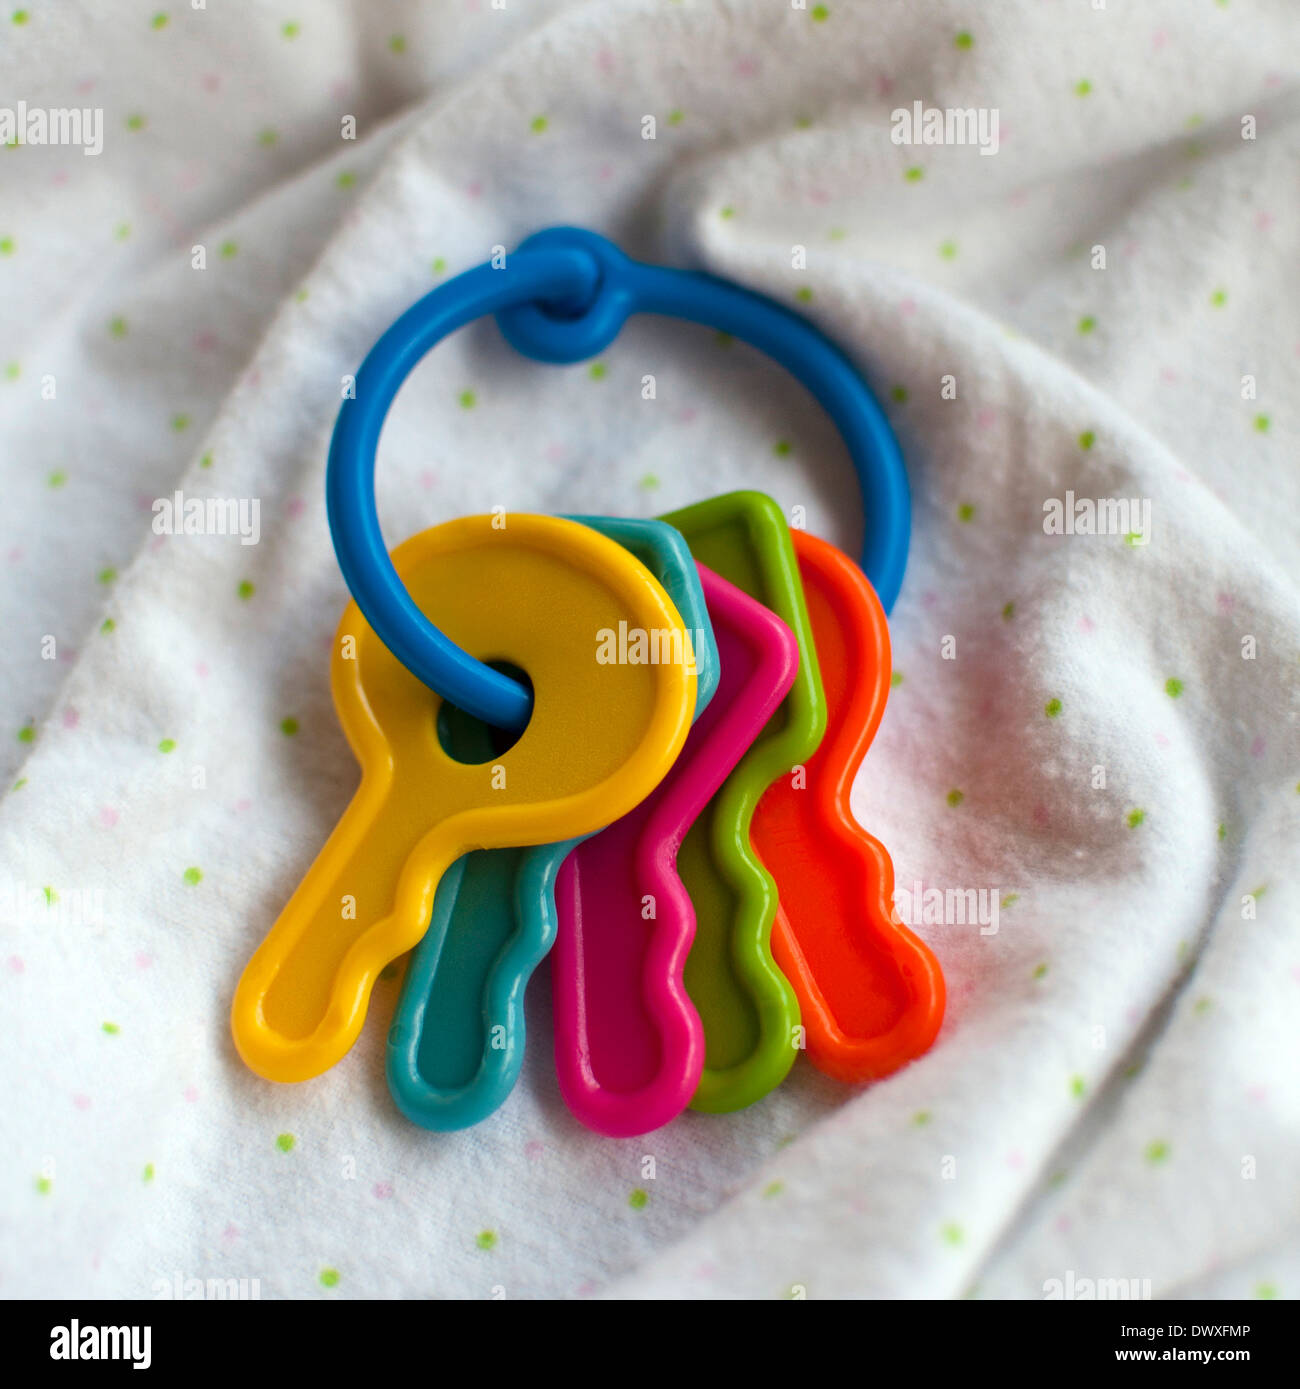 Baby toy keys on a soft white blanket Stock Photo